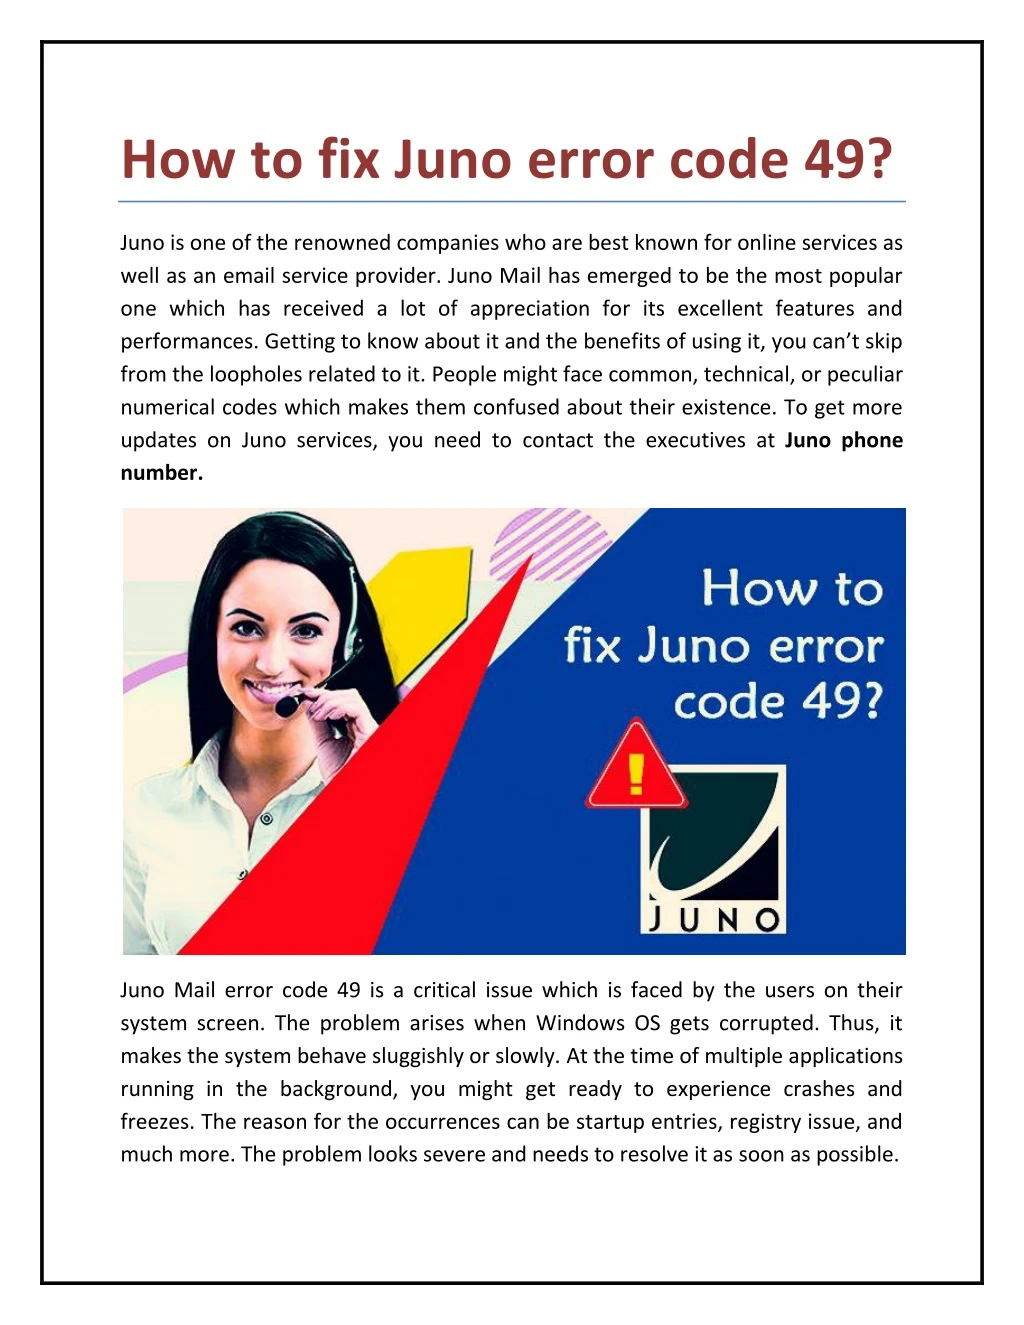 how to fix juno error code 49